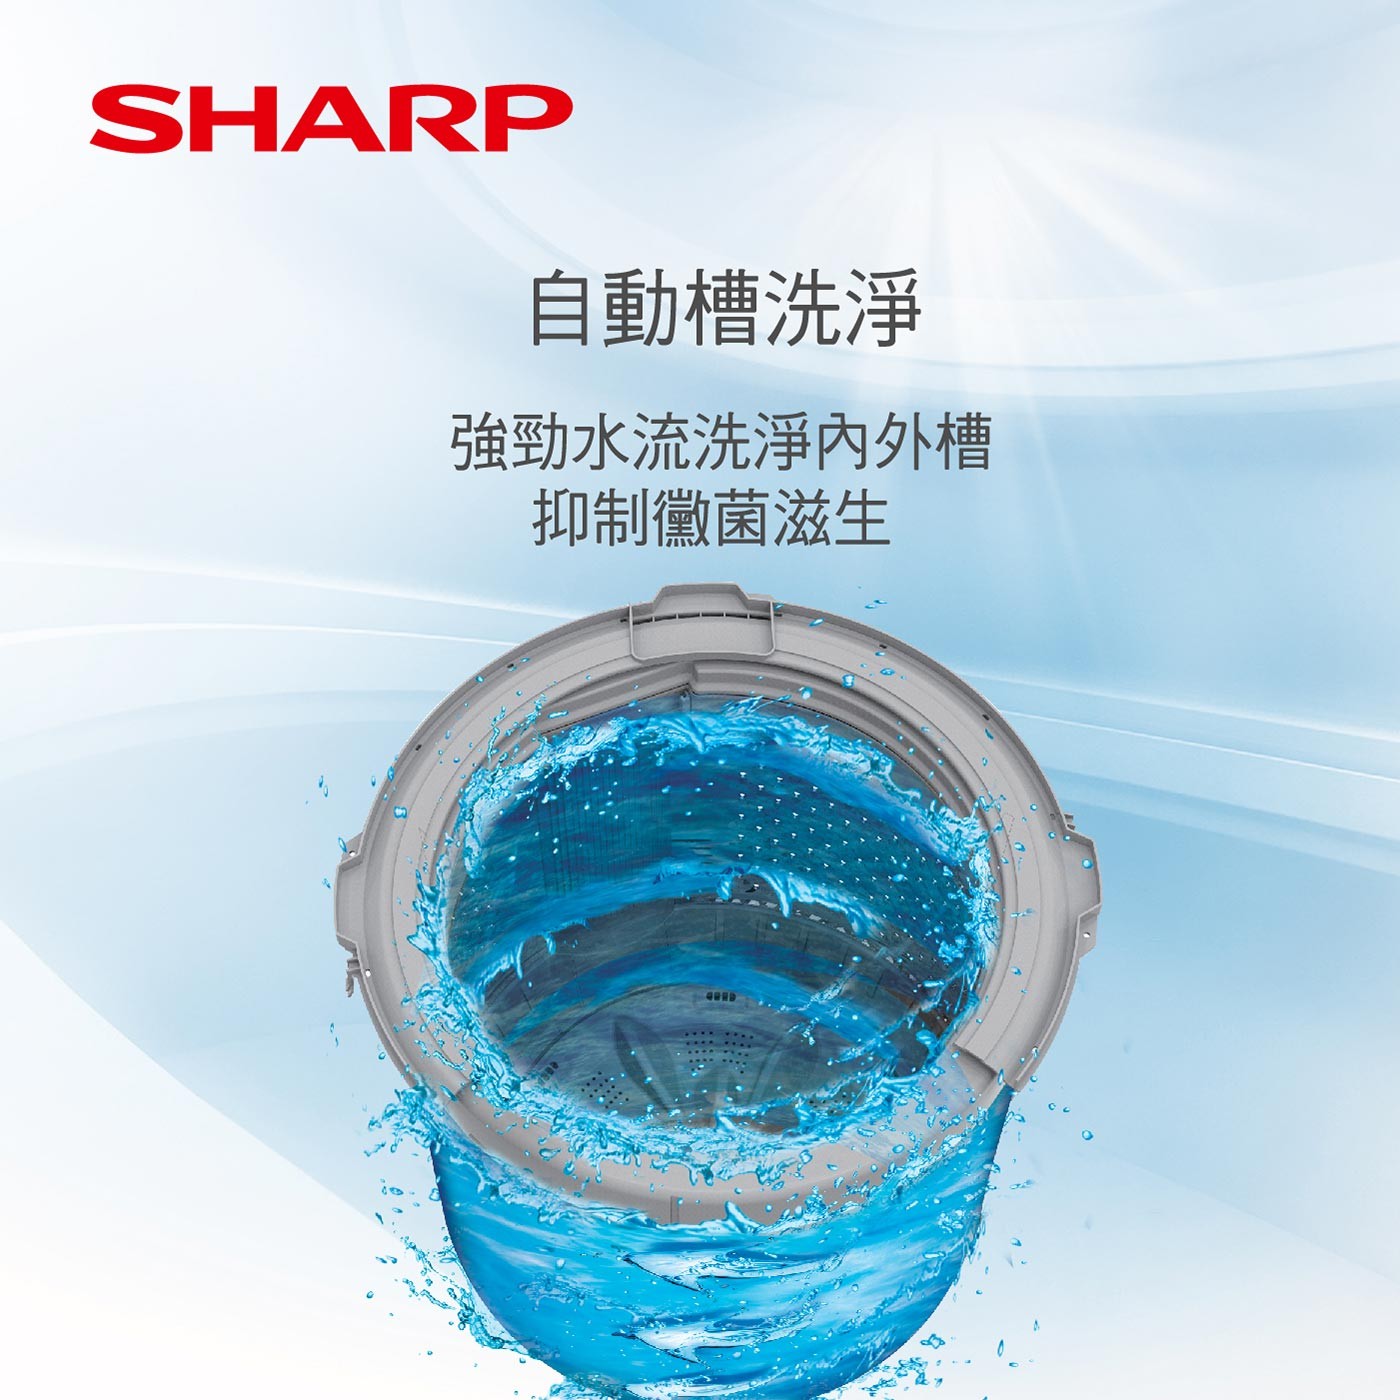 夏普17公斤超震波變頻直立式洗衣機 ES-SDU17T，超靜音智能變頻馬達，自動槽洗淨，直流變頻馬達。